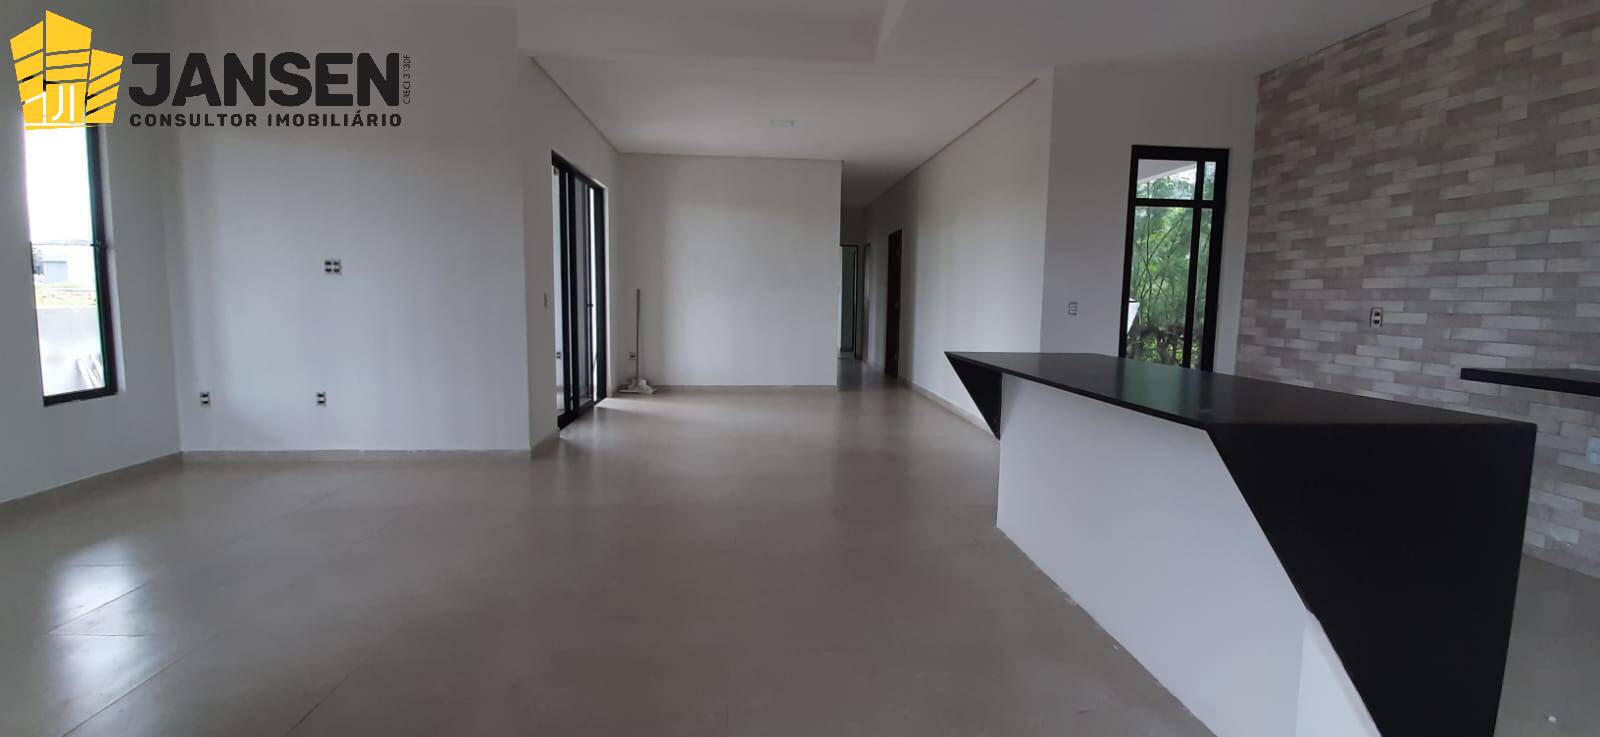 Casa, 3 quartos, 750 m² - Foto 4